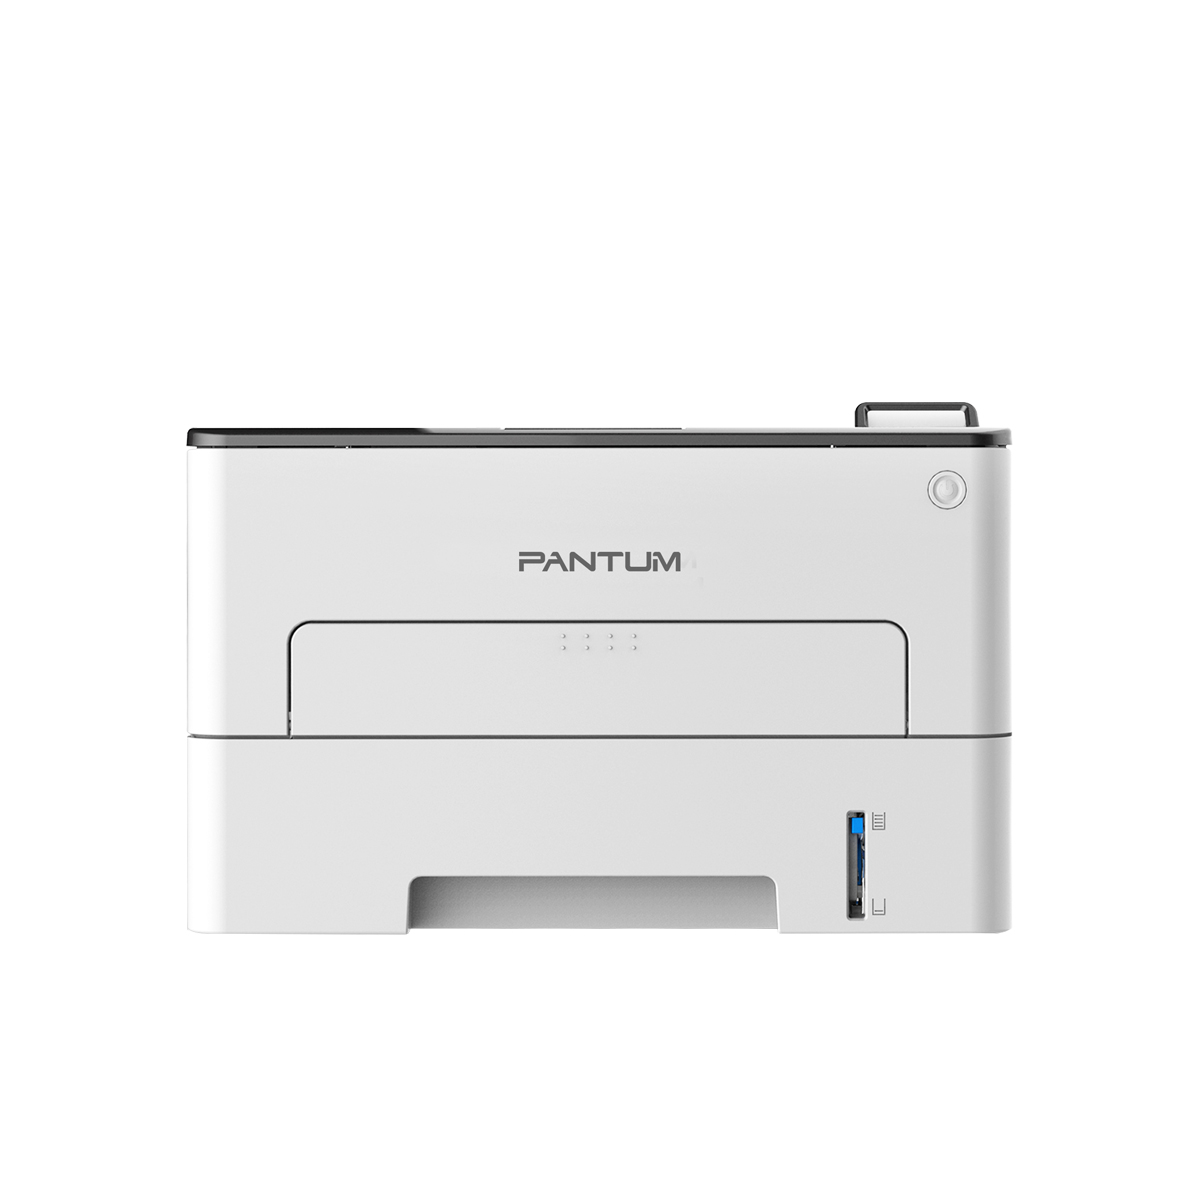 Принтер лазерный Pantum P3300DN, черно-белая печать, 33 стр/мин, 1200 x 1200 dpi, 256Мб RAM, USB, Ethernet